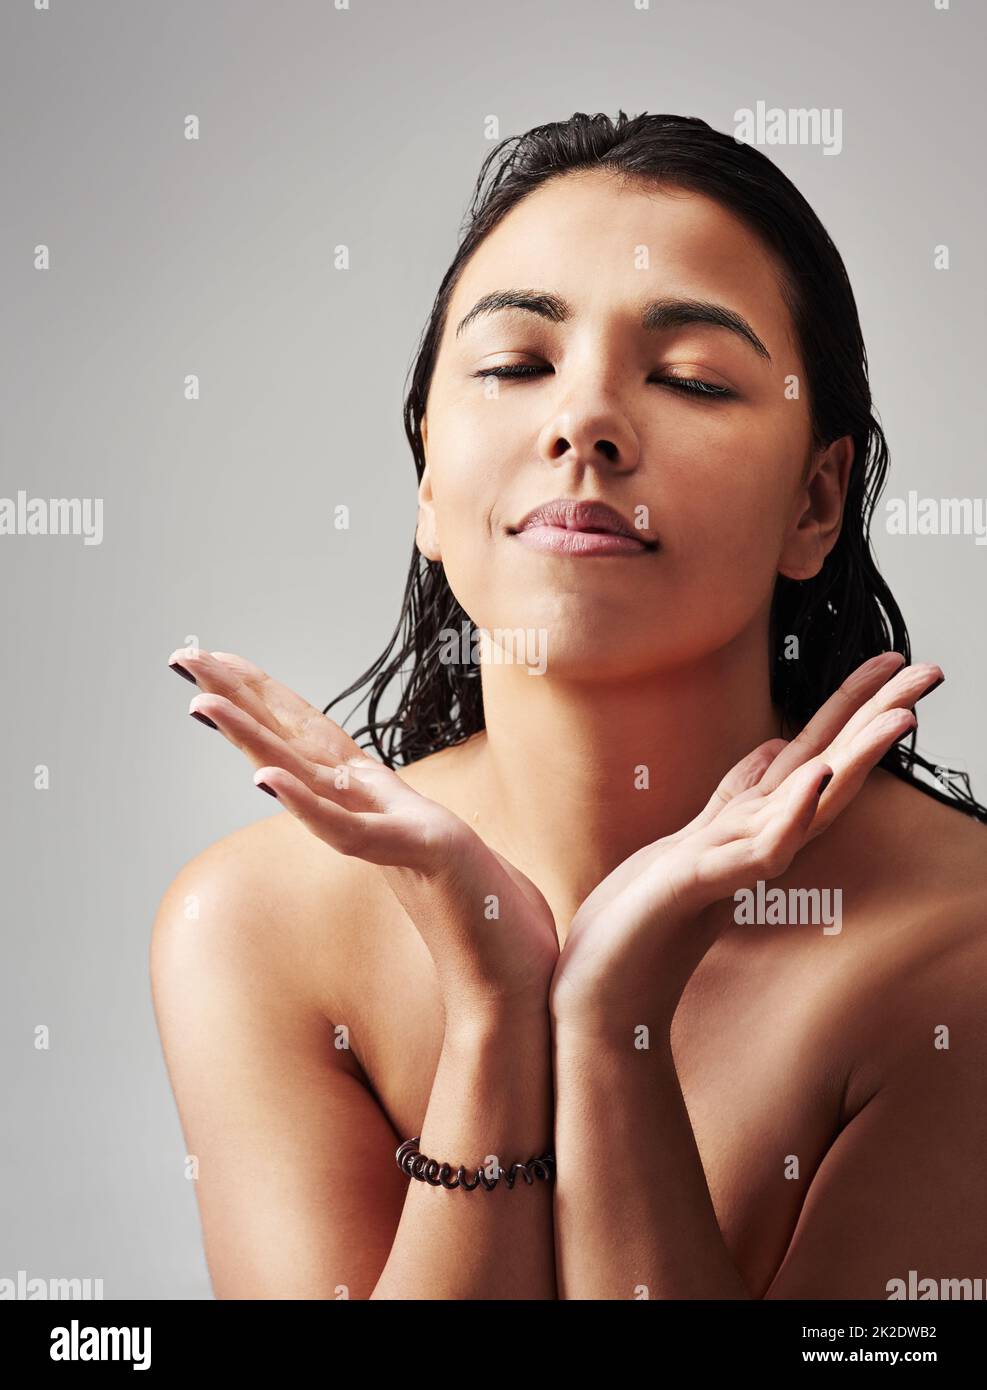 Ich fühle mich nach einer Dusche großartig. Studioaufnahme einer jungen Frau mit nassem Haar, die vor grauem Hintergrund posiert. Stockfoto